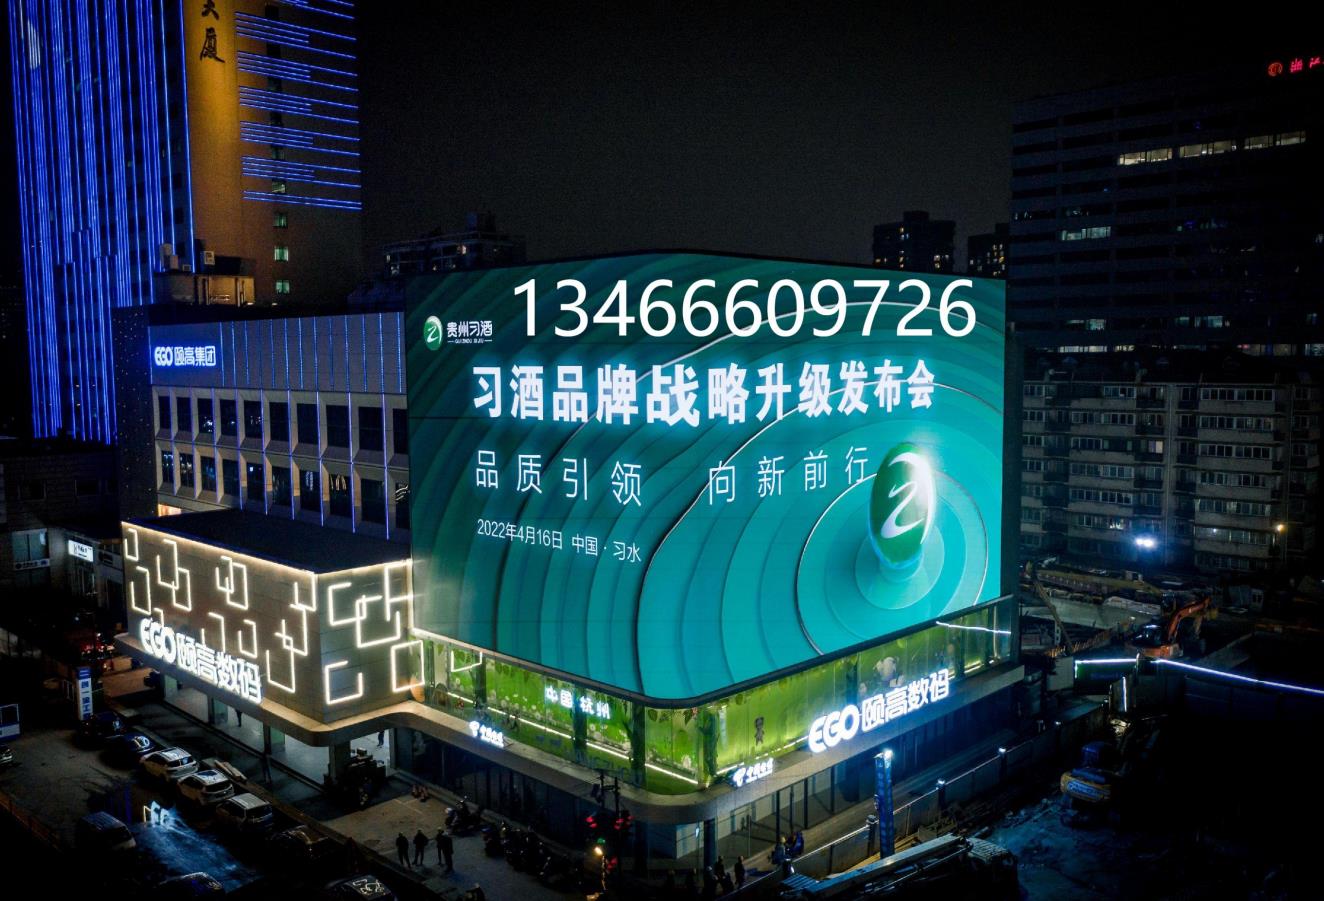 杭州頤高數碼大廈裸眼3d大屏廣告